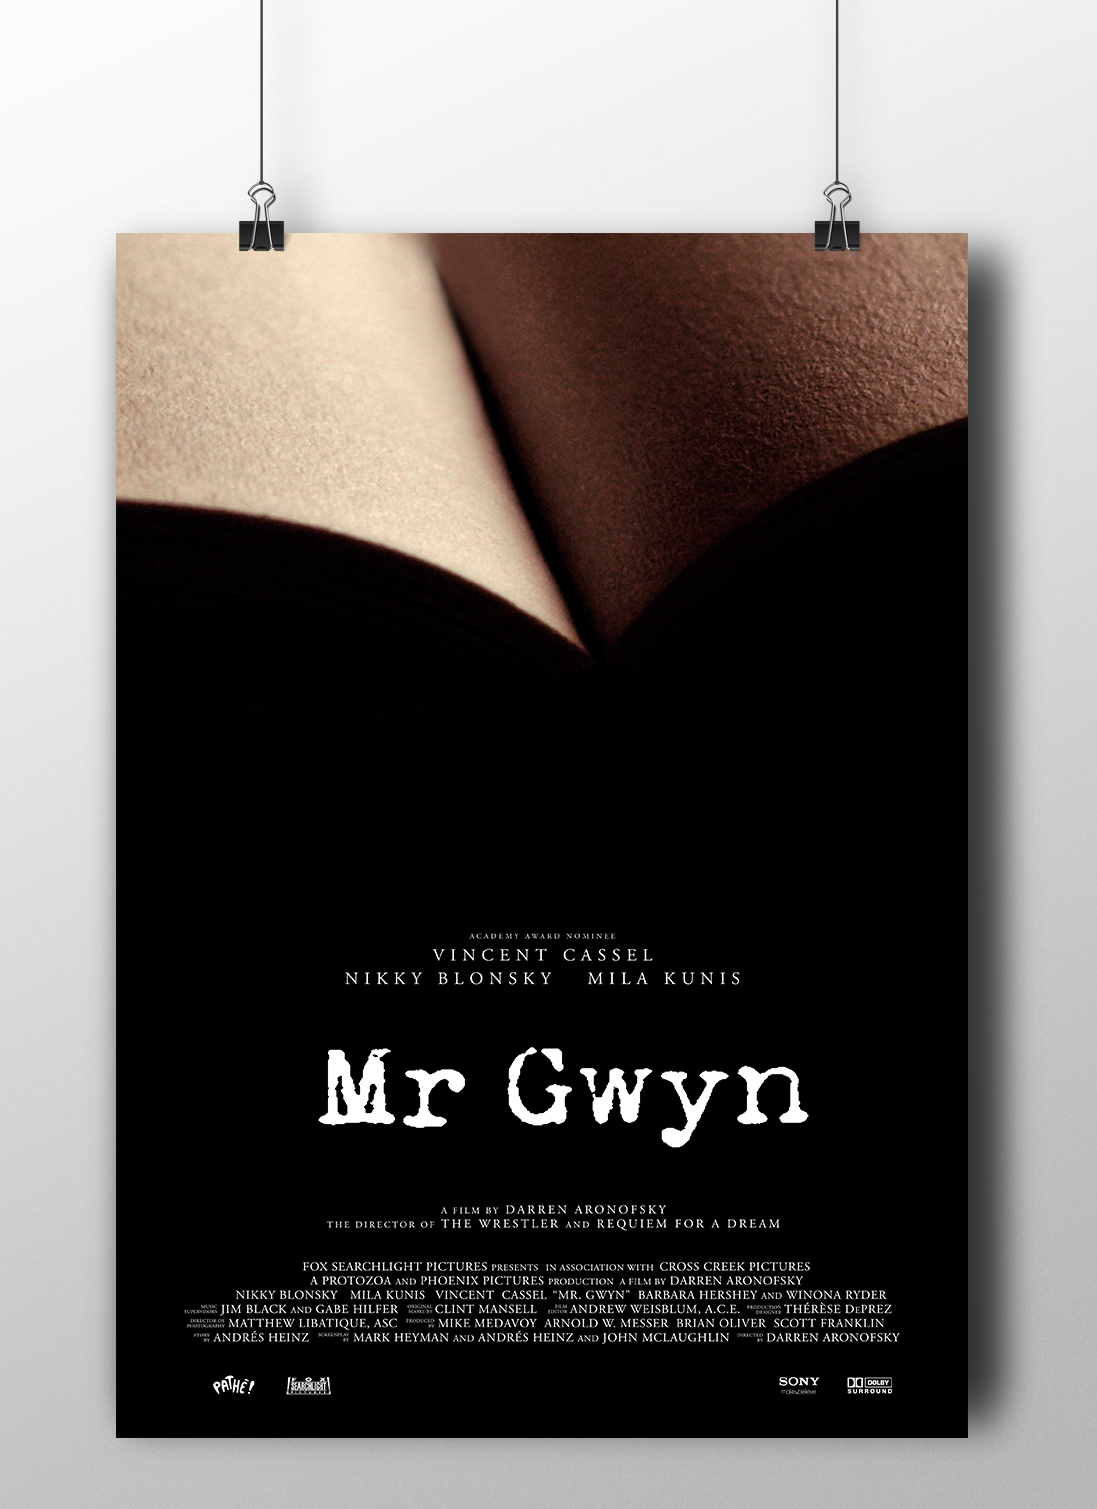 gwyn Mr Gwyn poster movie book PressBook credits intro video cartel creditos novel writer Sensuality alessandro baricco